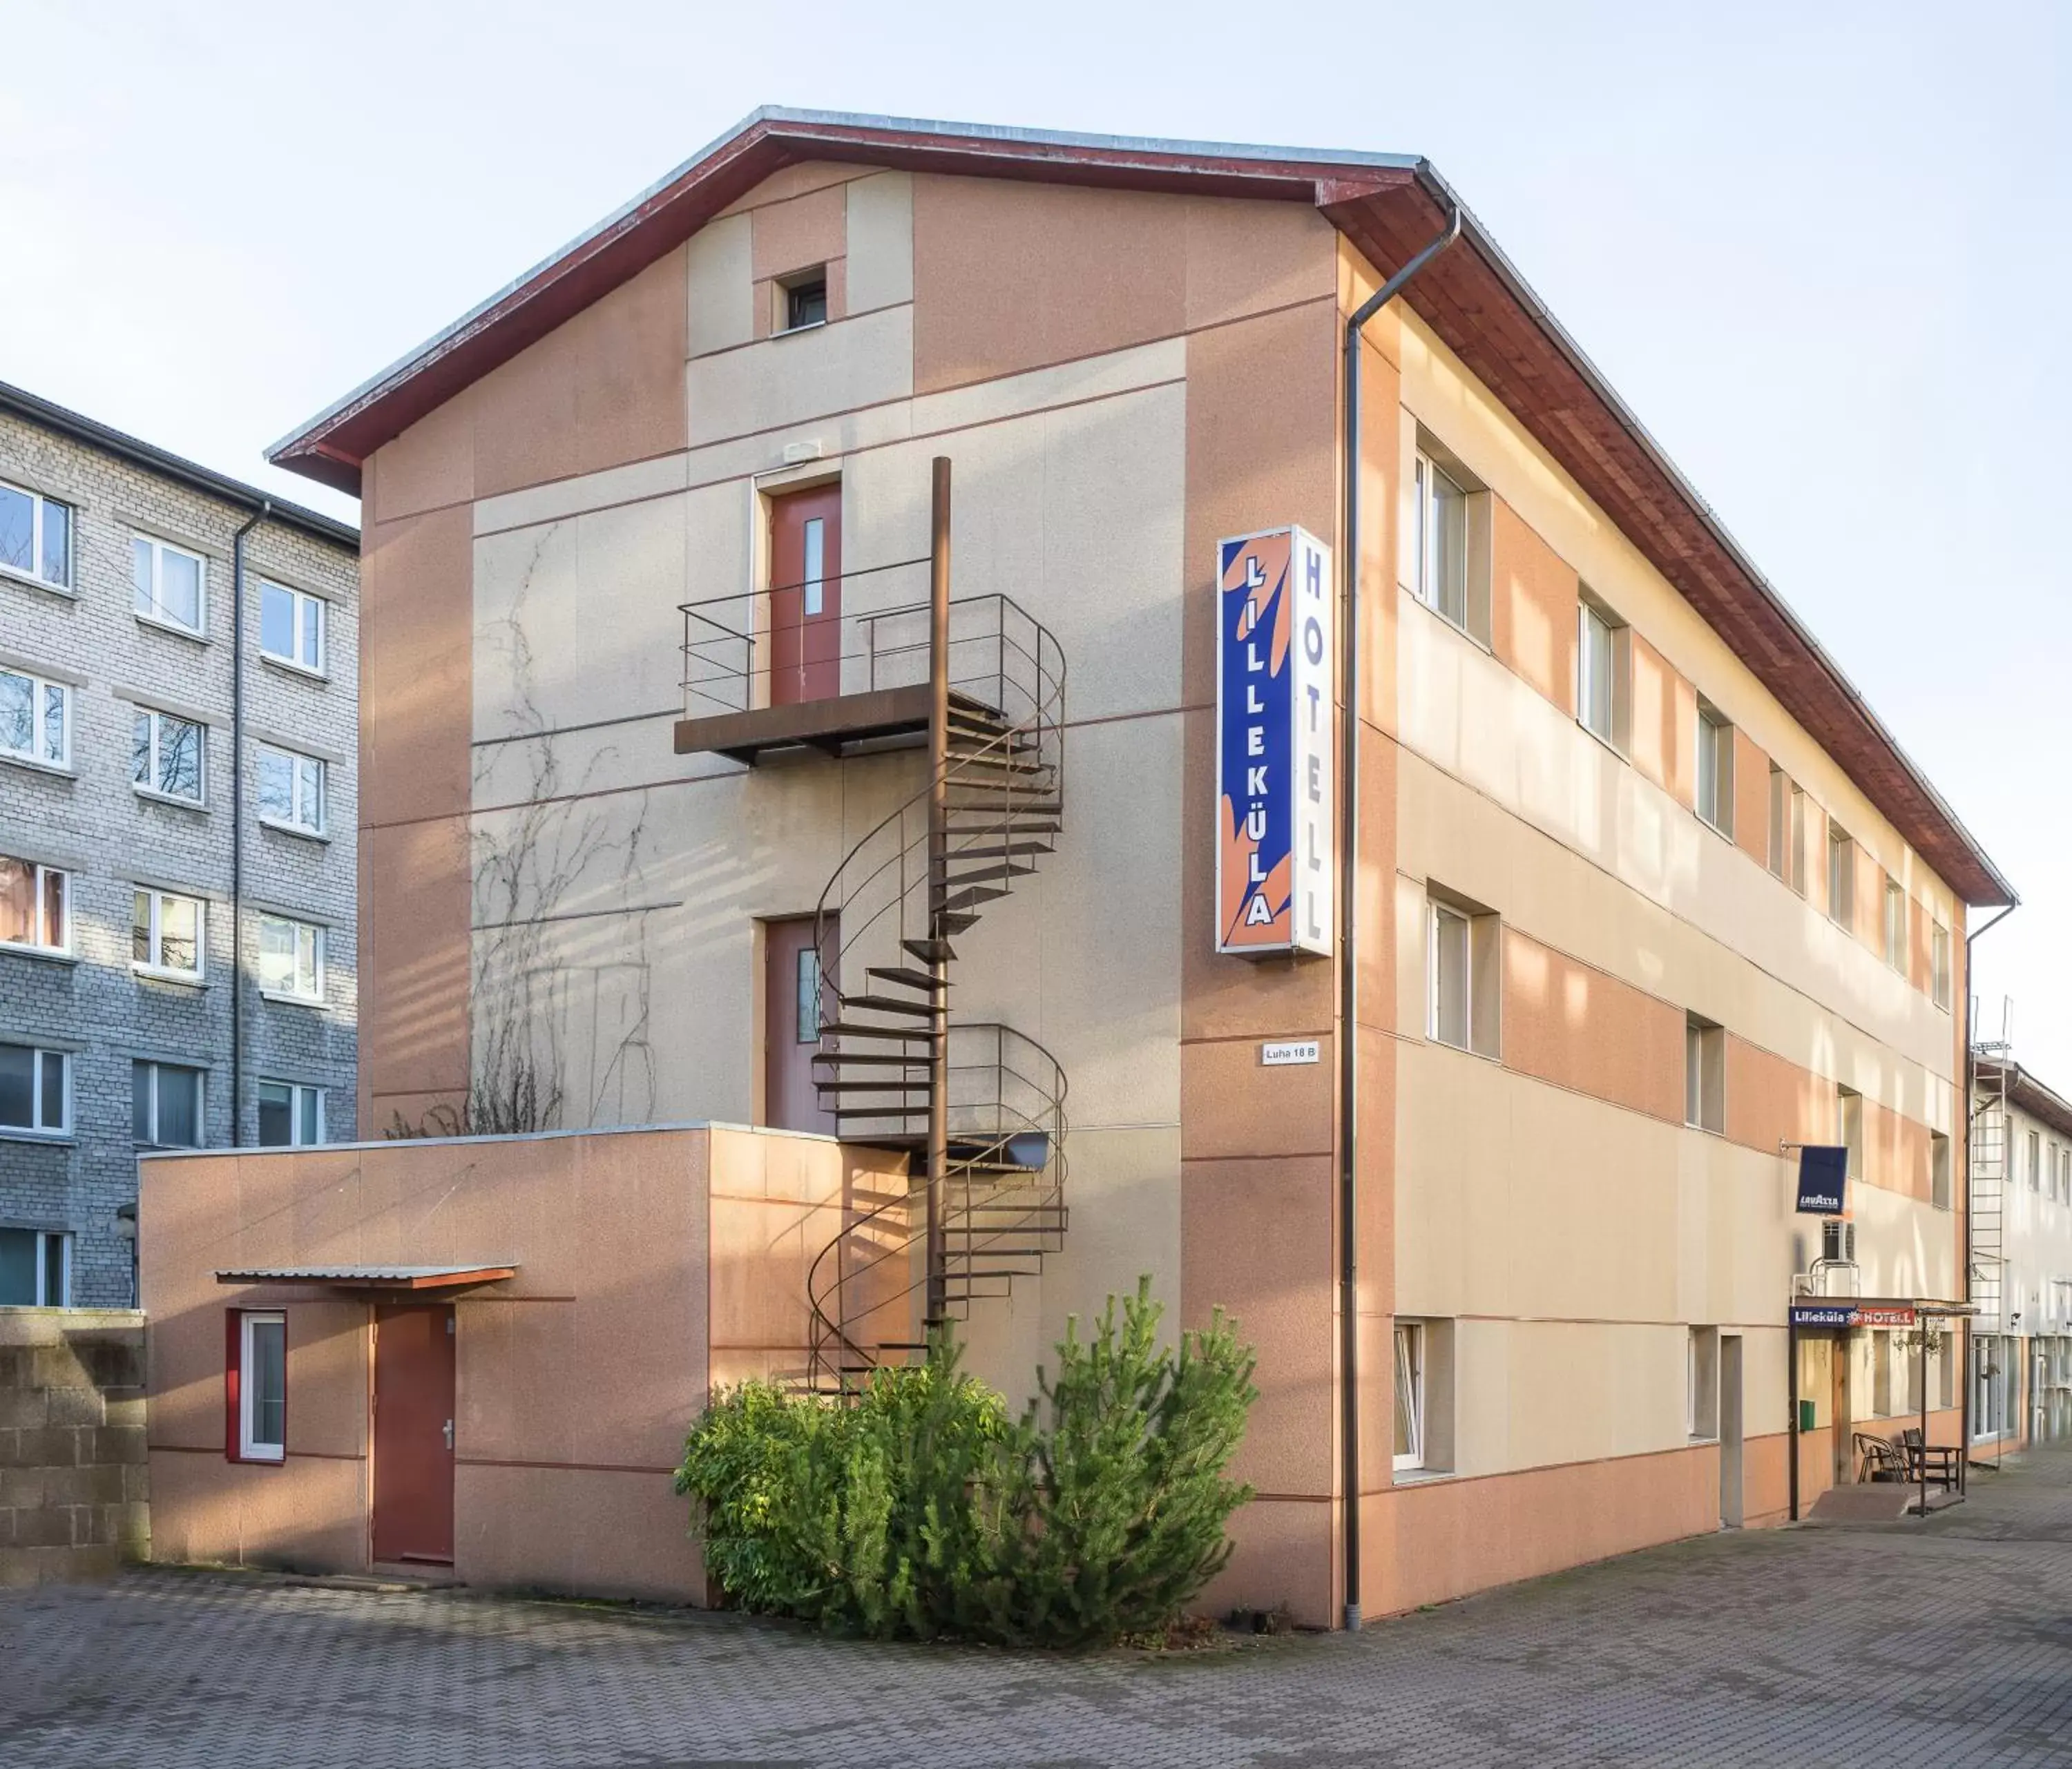 Facade/entrance, Property Building in Lilleküla Hotel